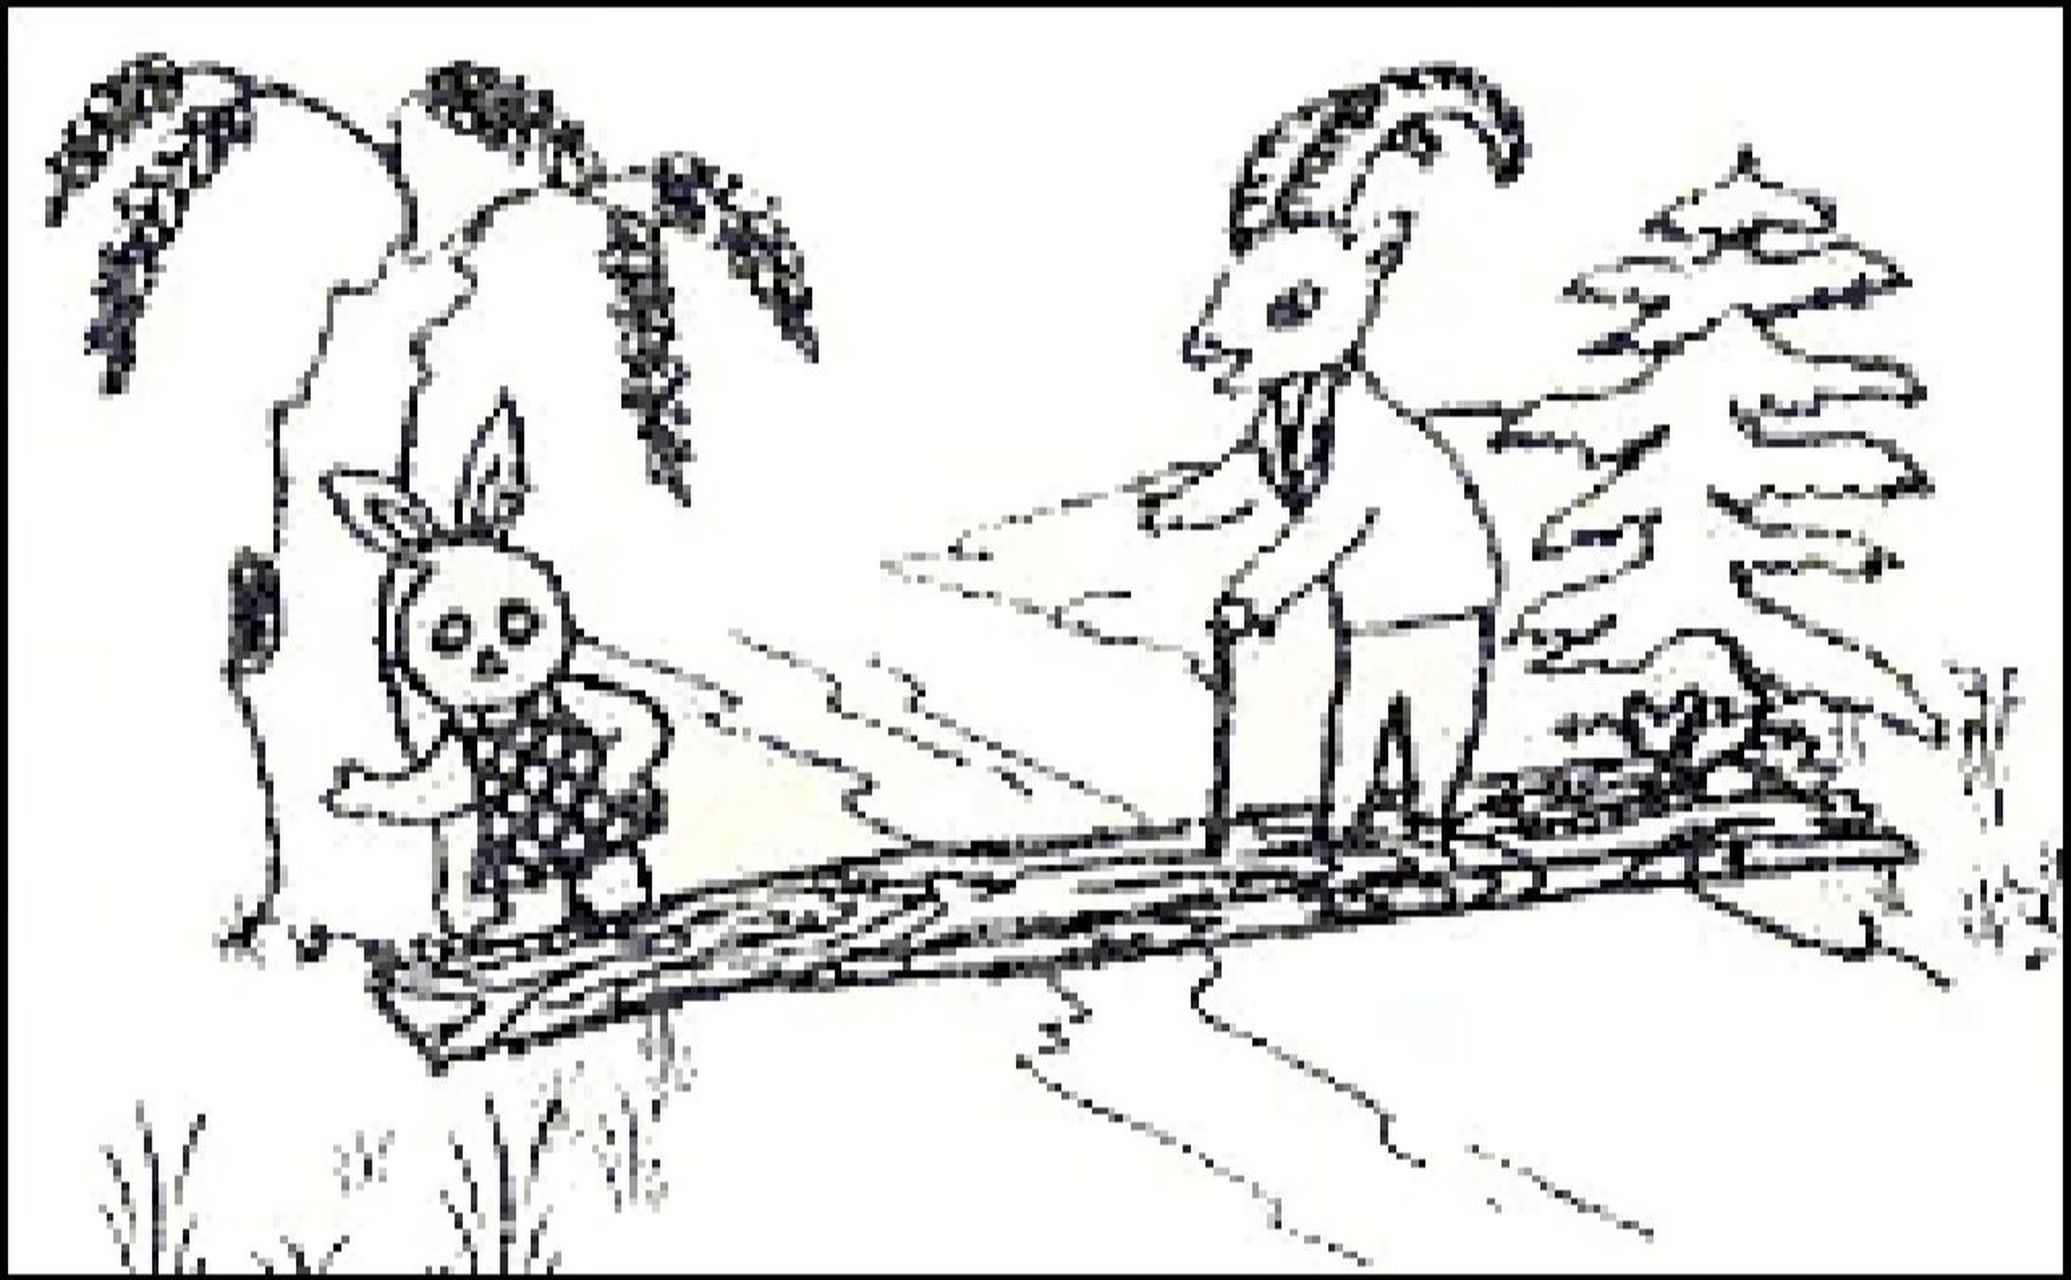 他走呀走呀,来到小河边,看到了一座独木桥,他刚走到独木桥上,老山羊